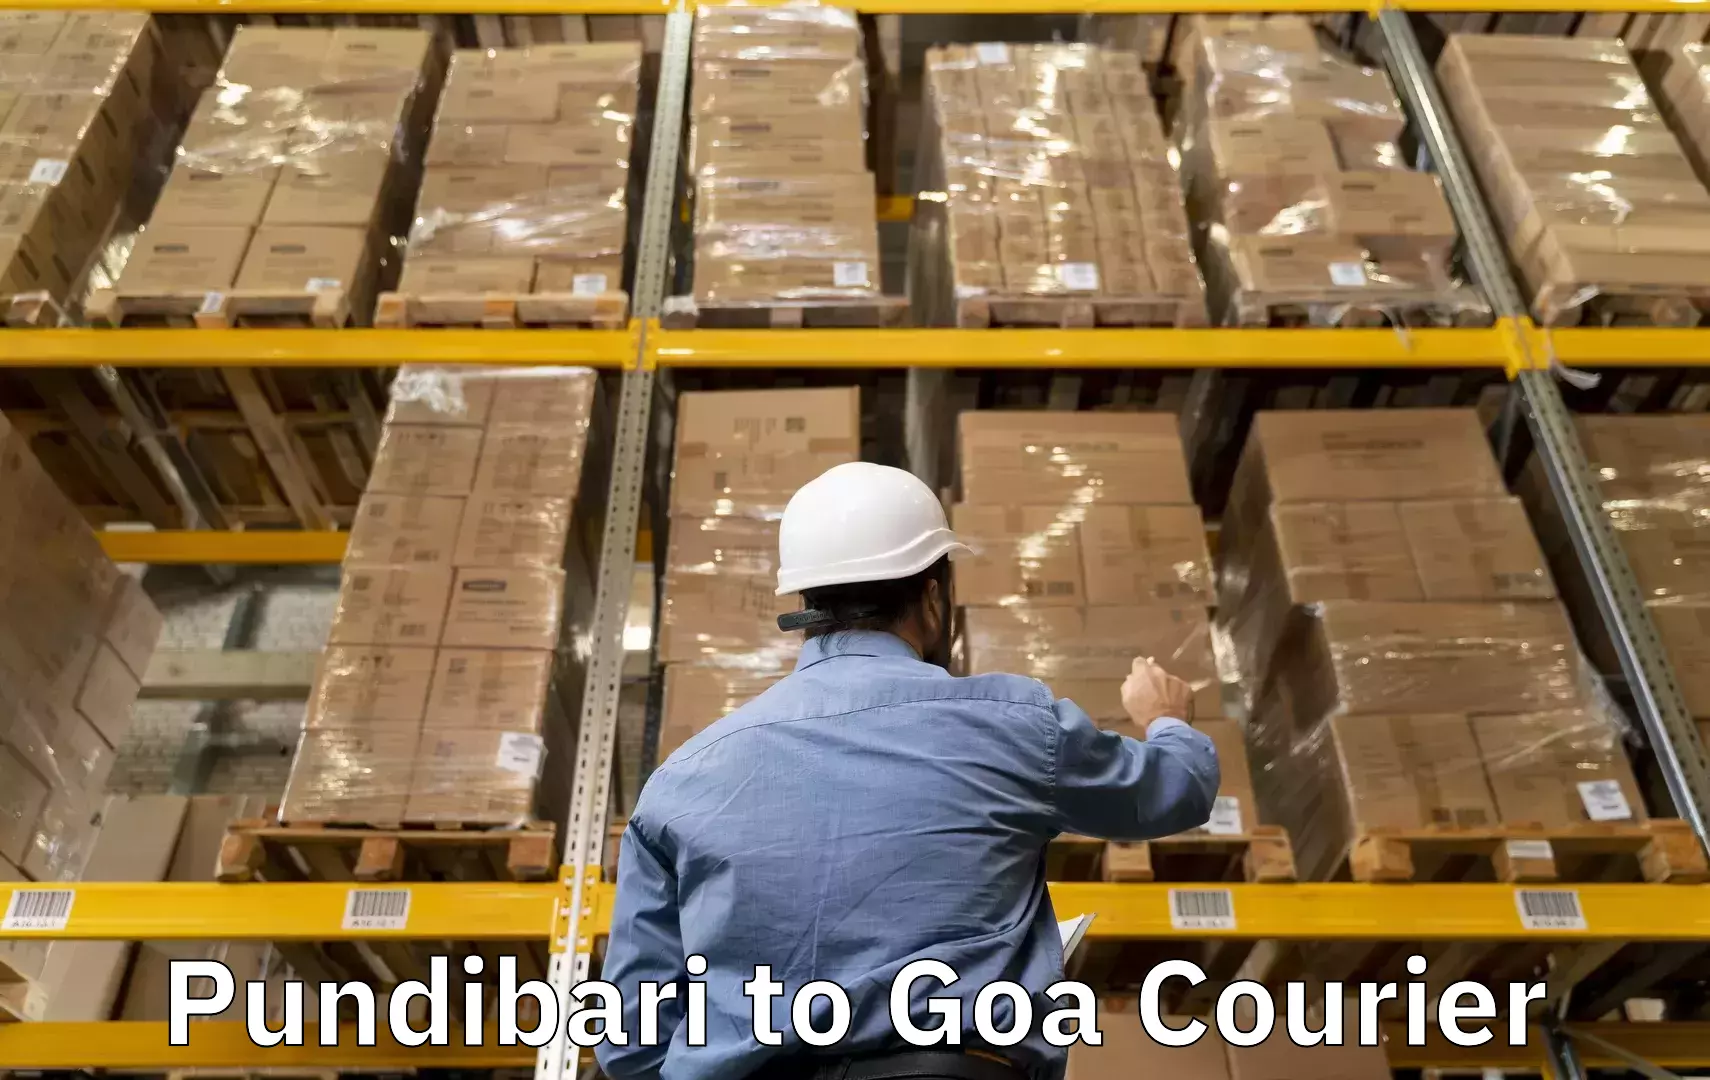 Luggage delivery network Pundibari to Goa